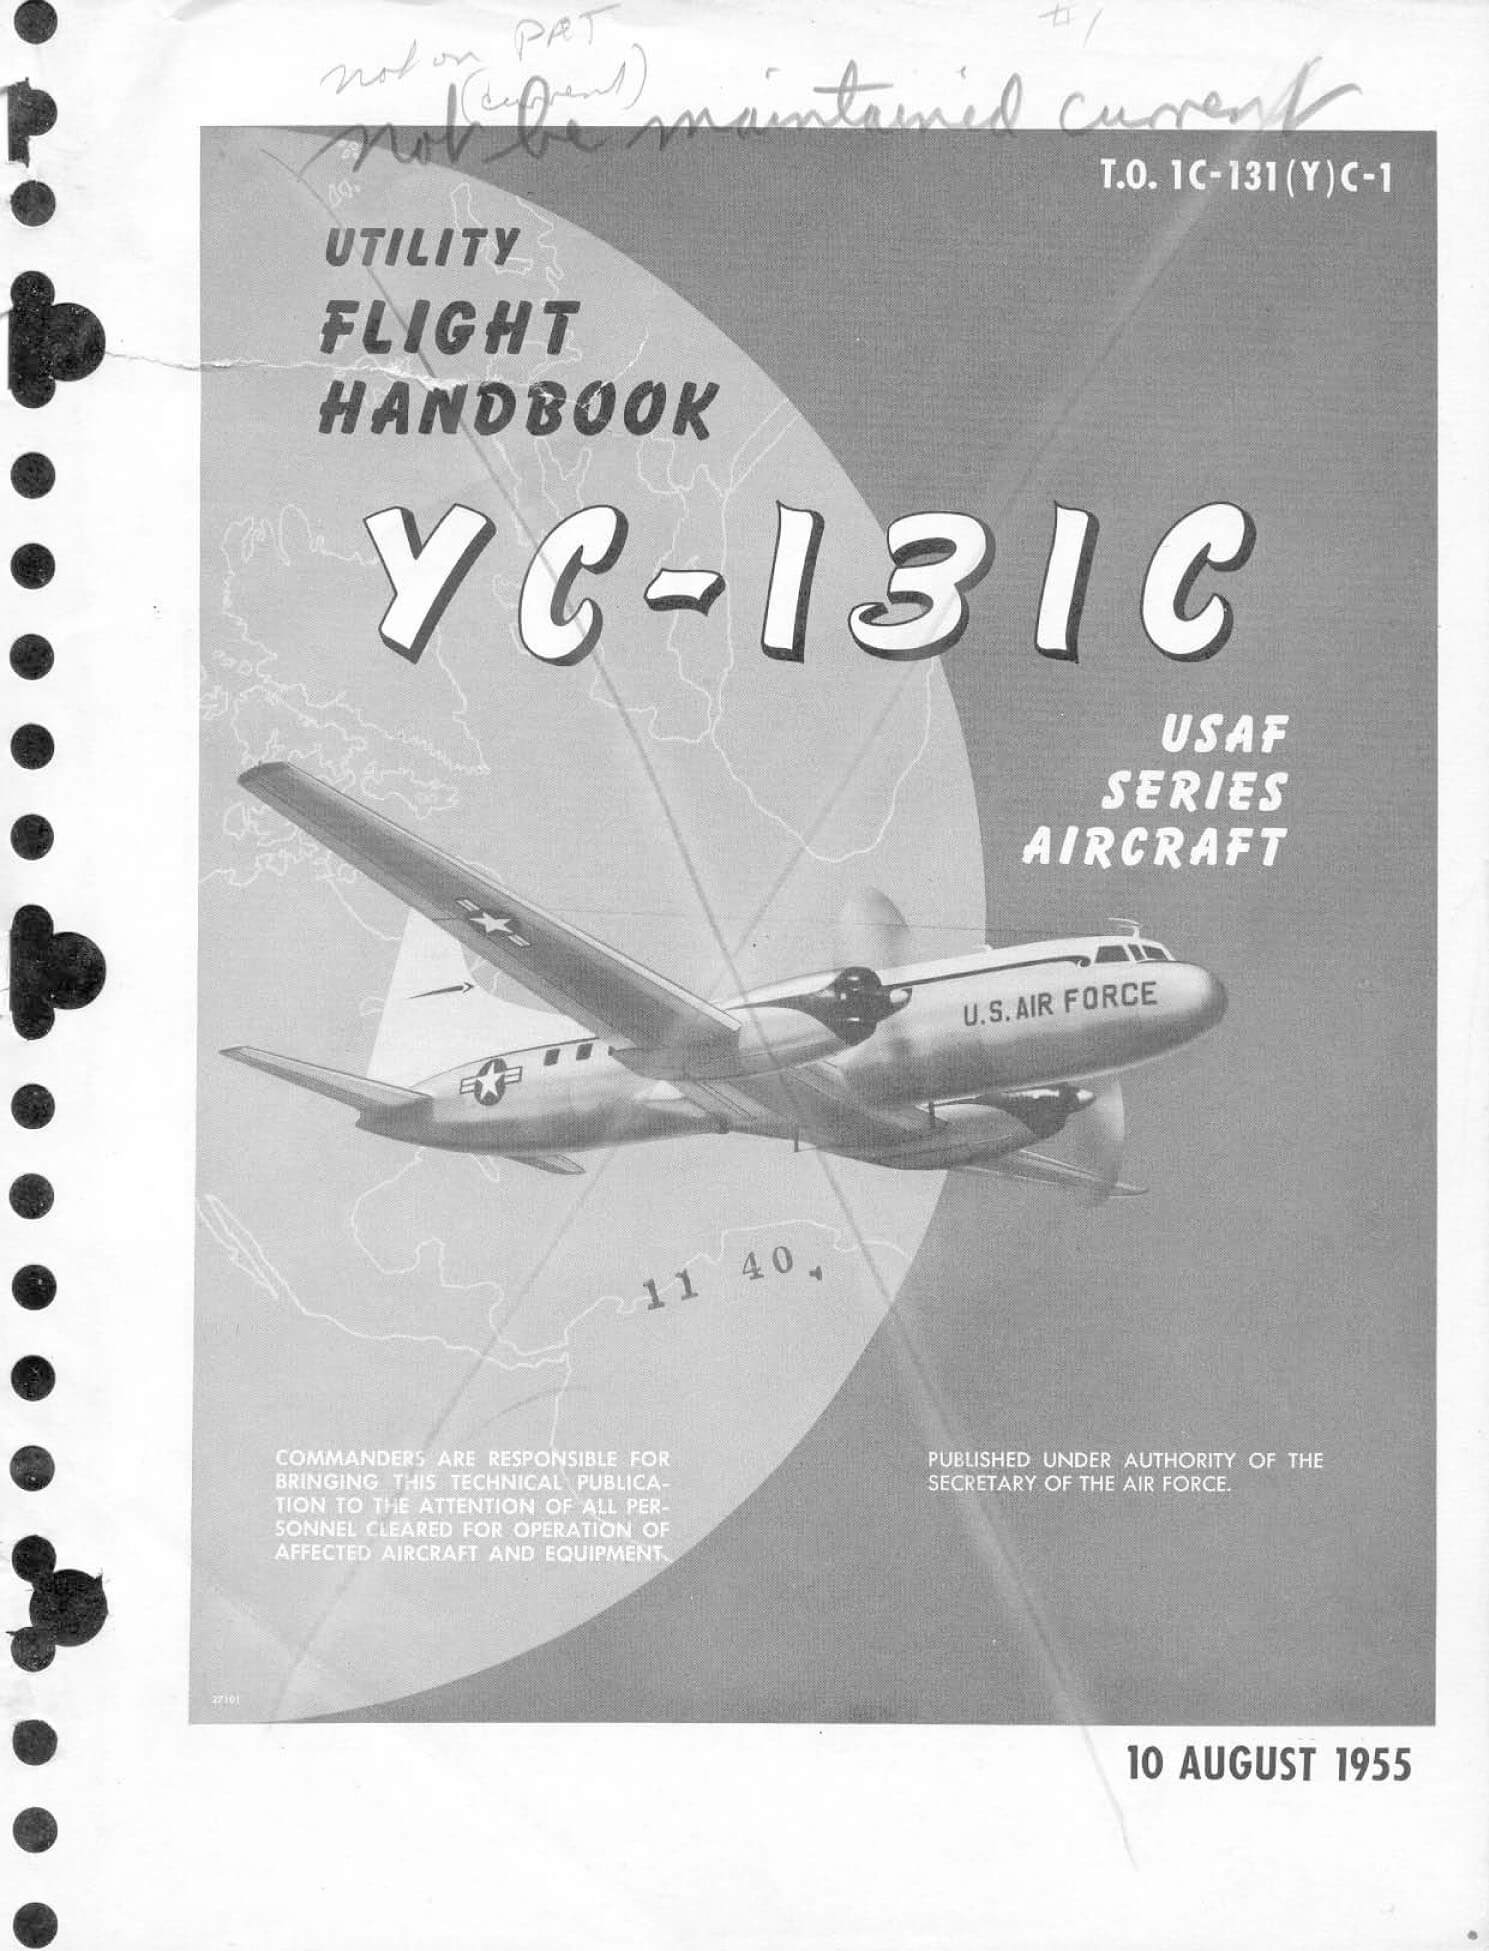 Convair 240 flight manual diagram